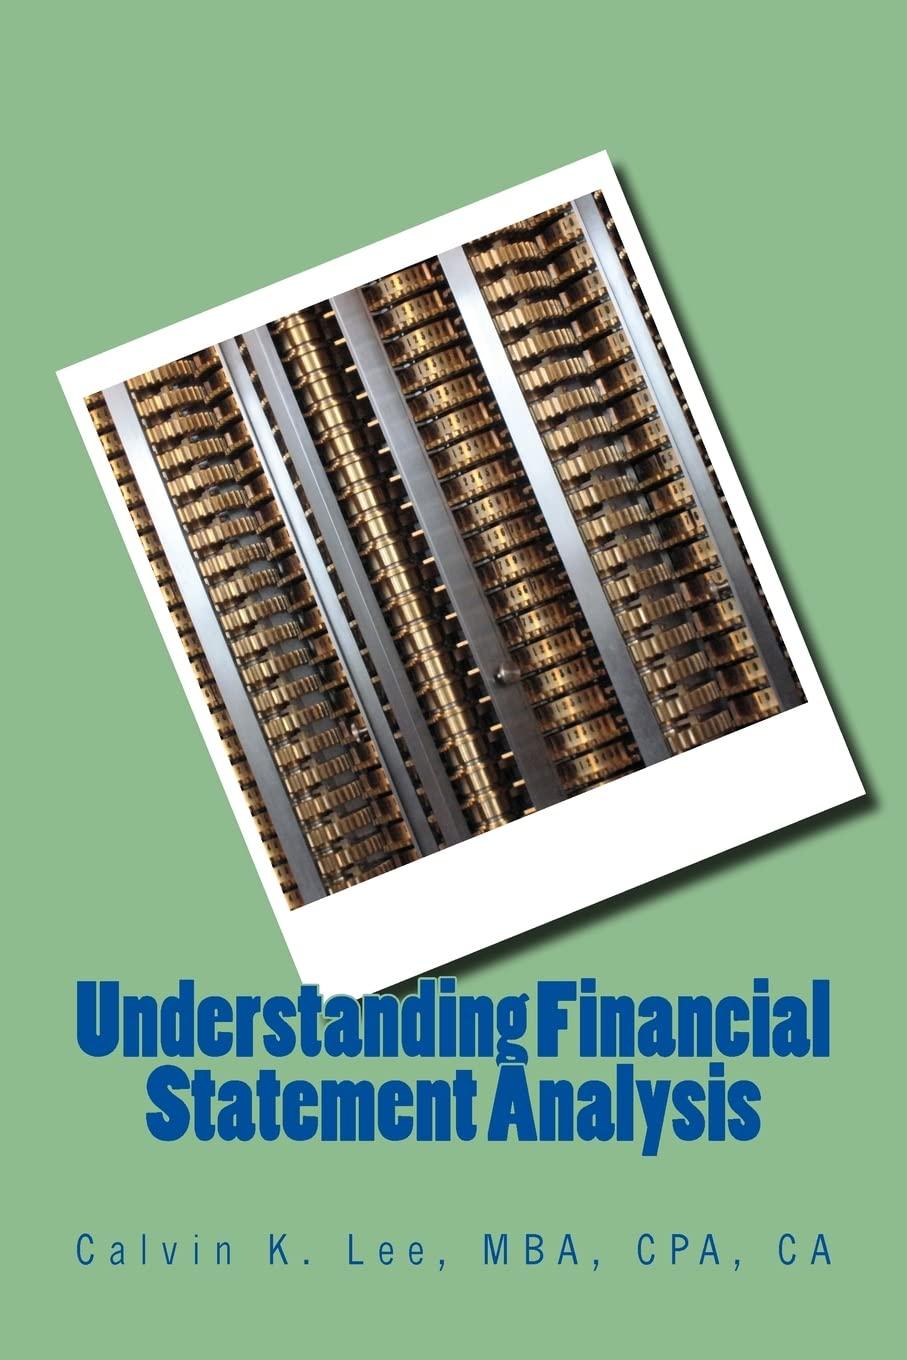 understanding financial statement analysis 1st edition calvin k. lee 1522748725, 978-1522748724